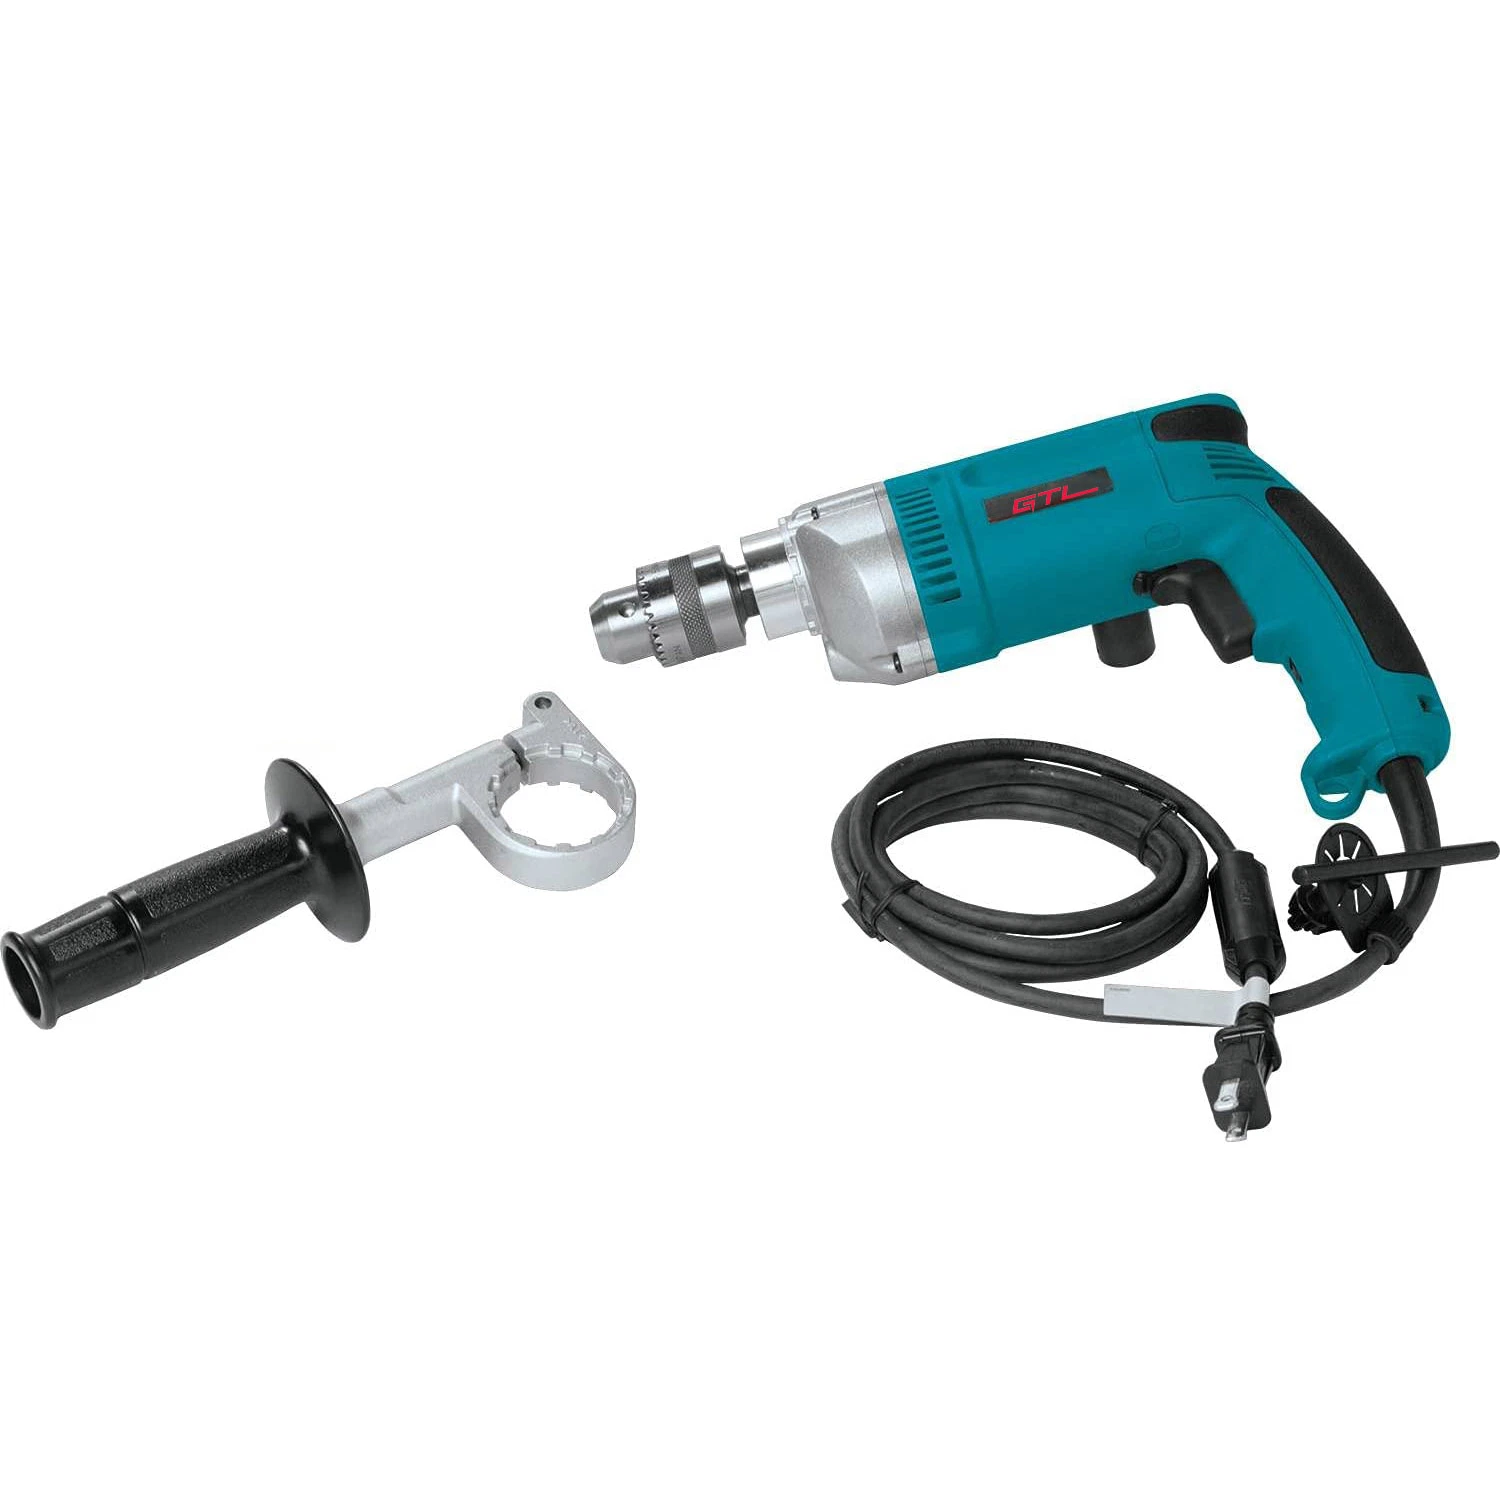 Perceuse électrique 600 W à mandrin porte-clés 13 mm avec câble pour outils électriques domestiques (ED008)